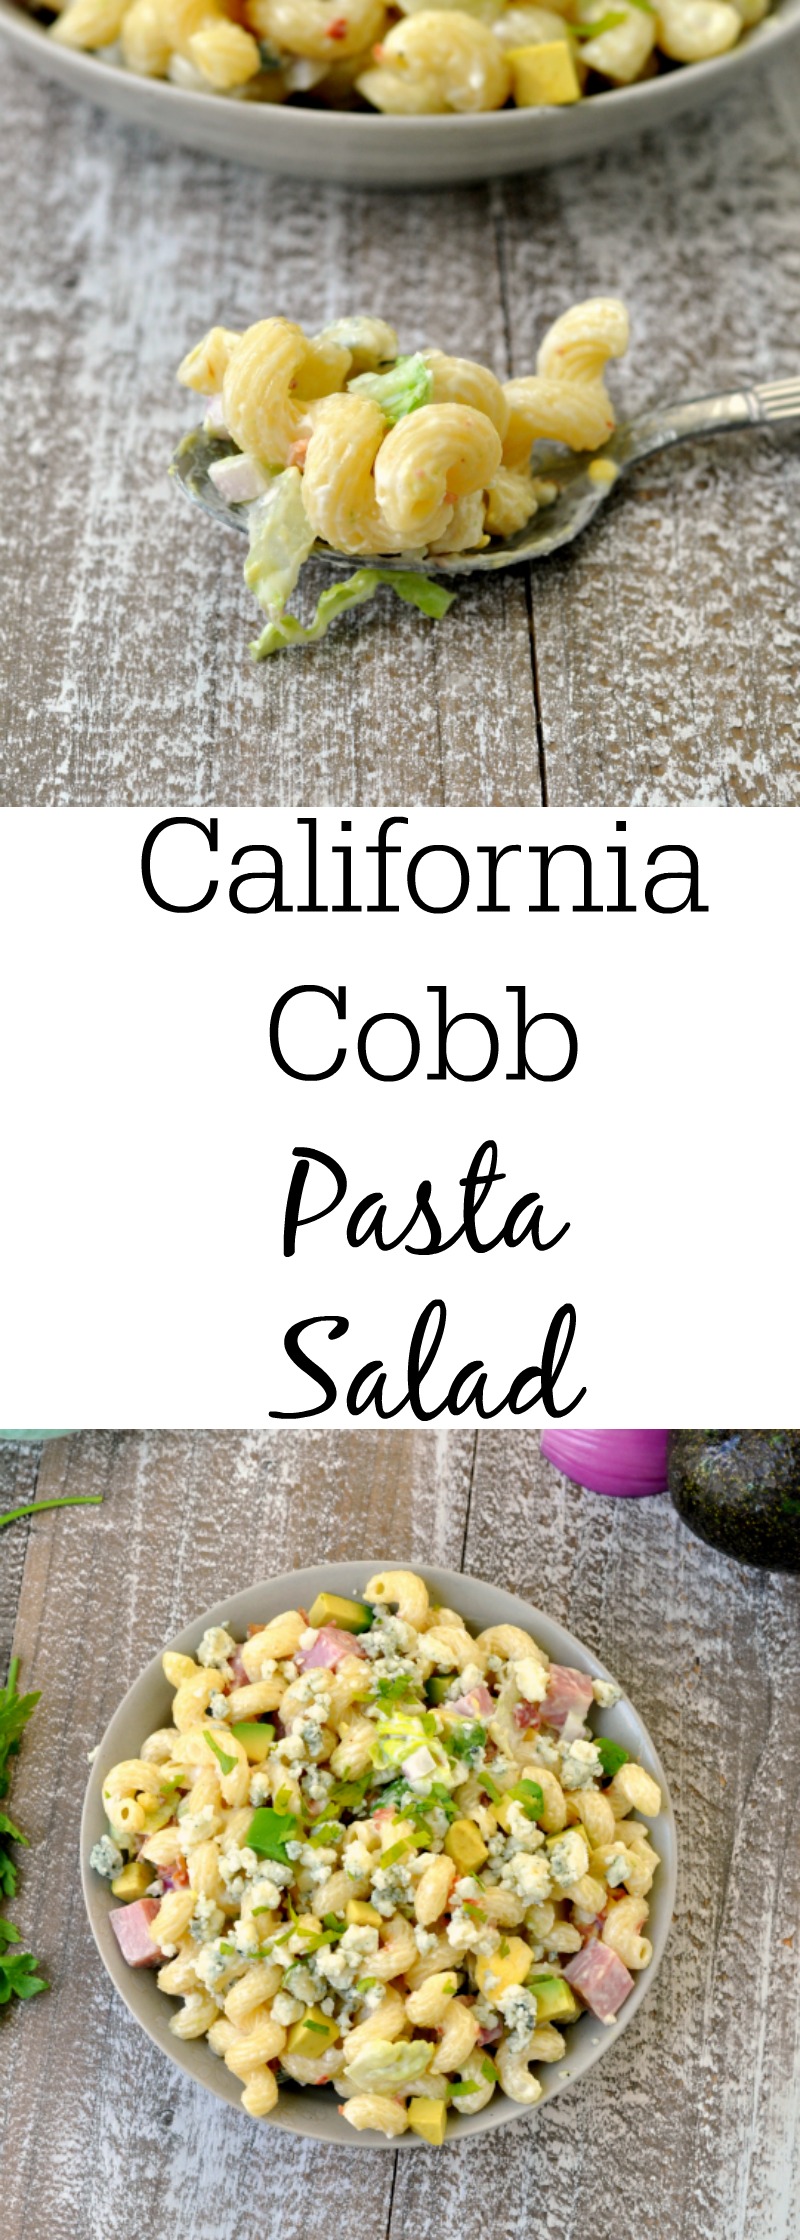 Easy California Cobb Pasta Salad